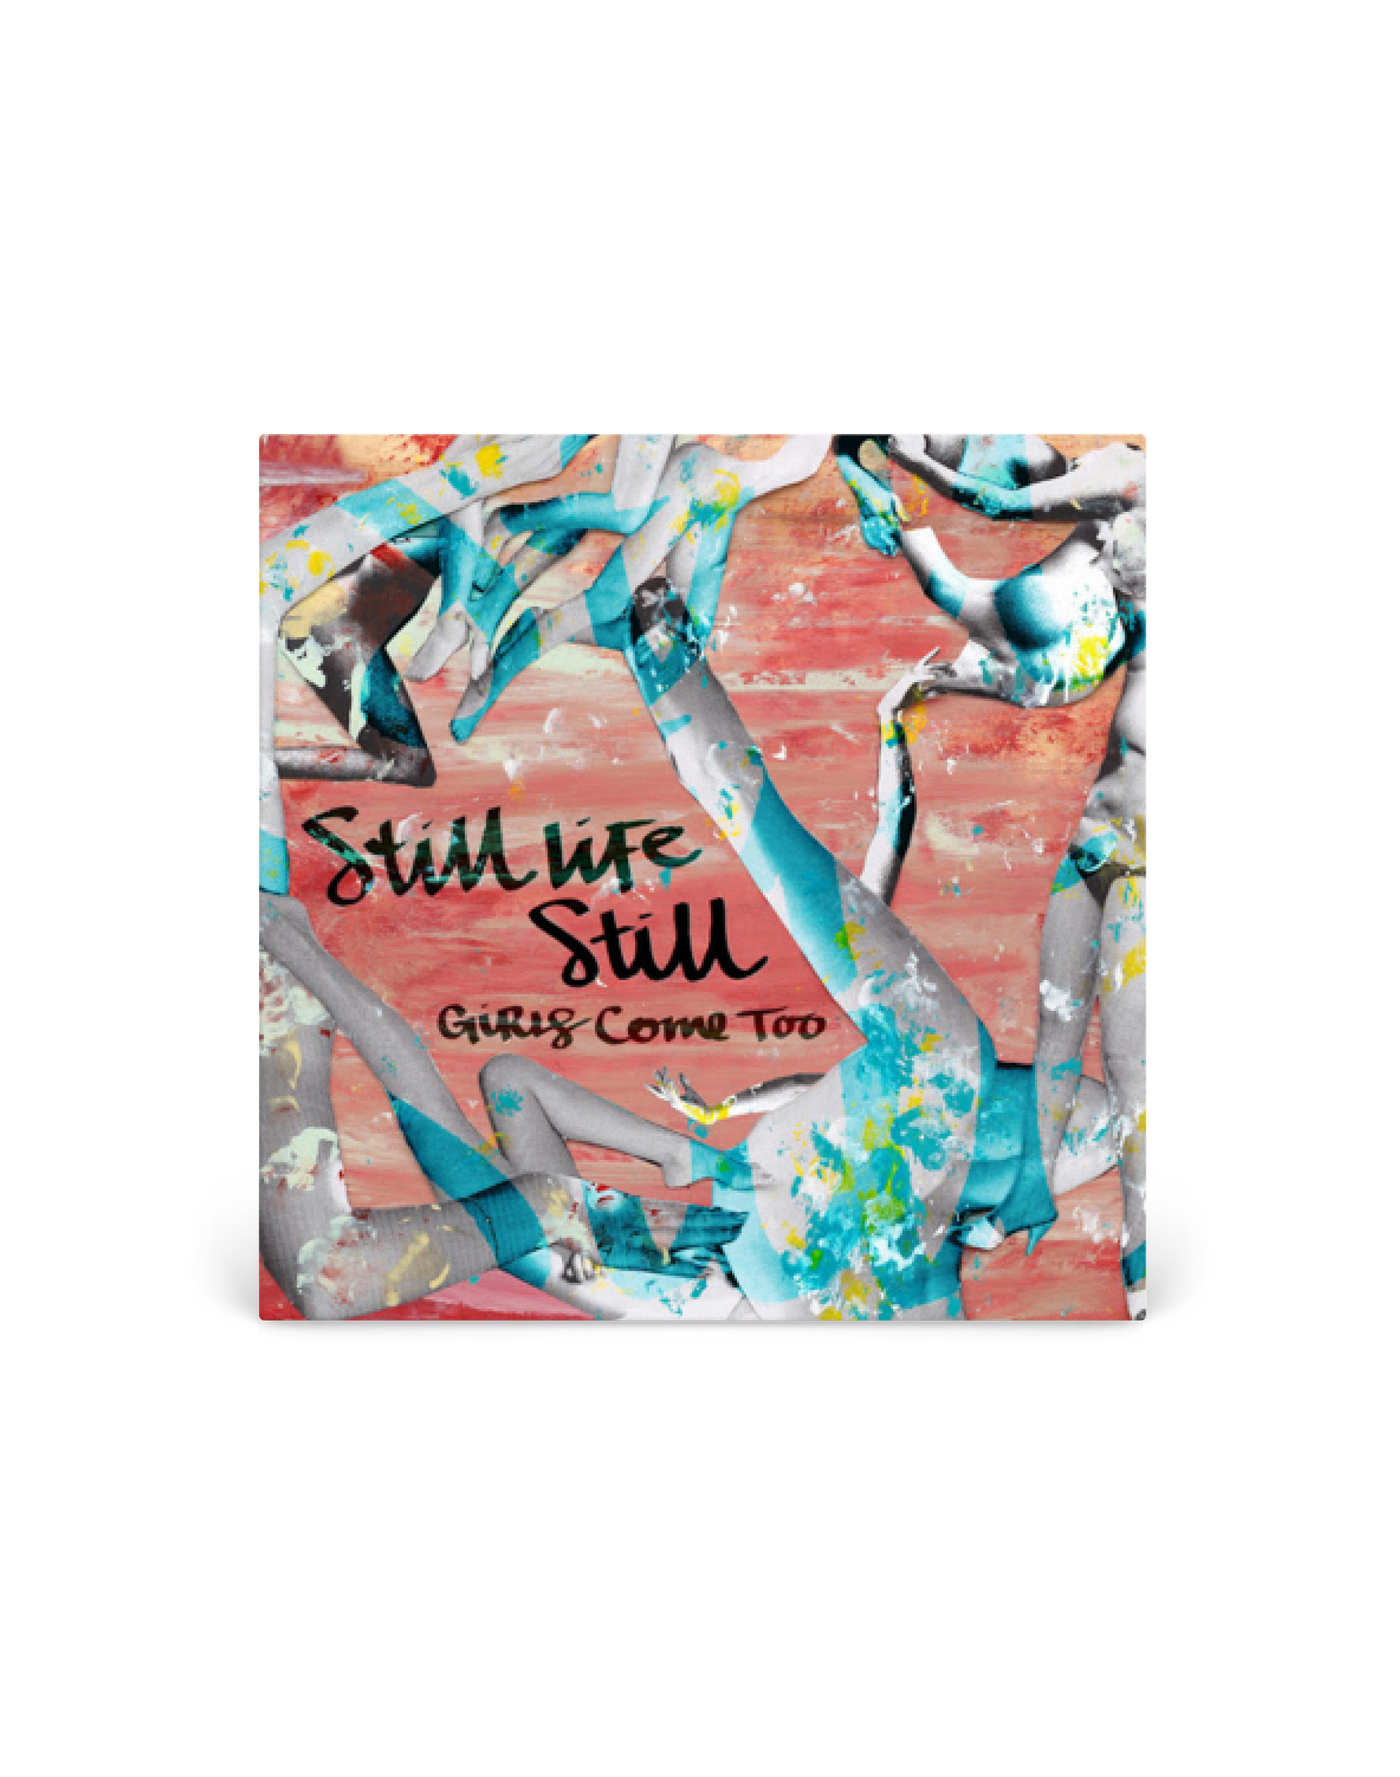 CD - Still Life Still Girls Come Too